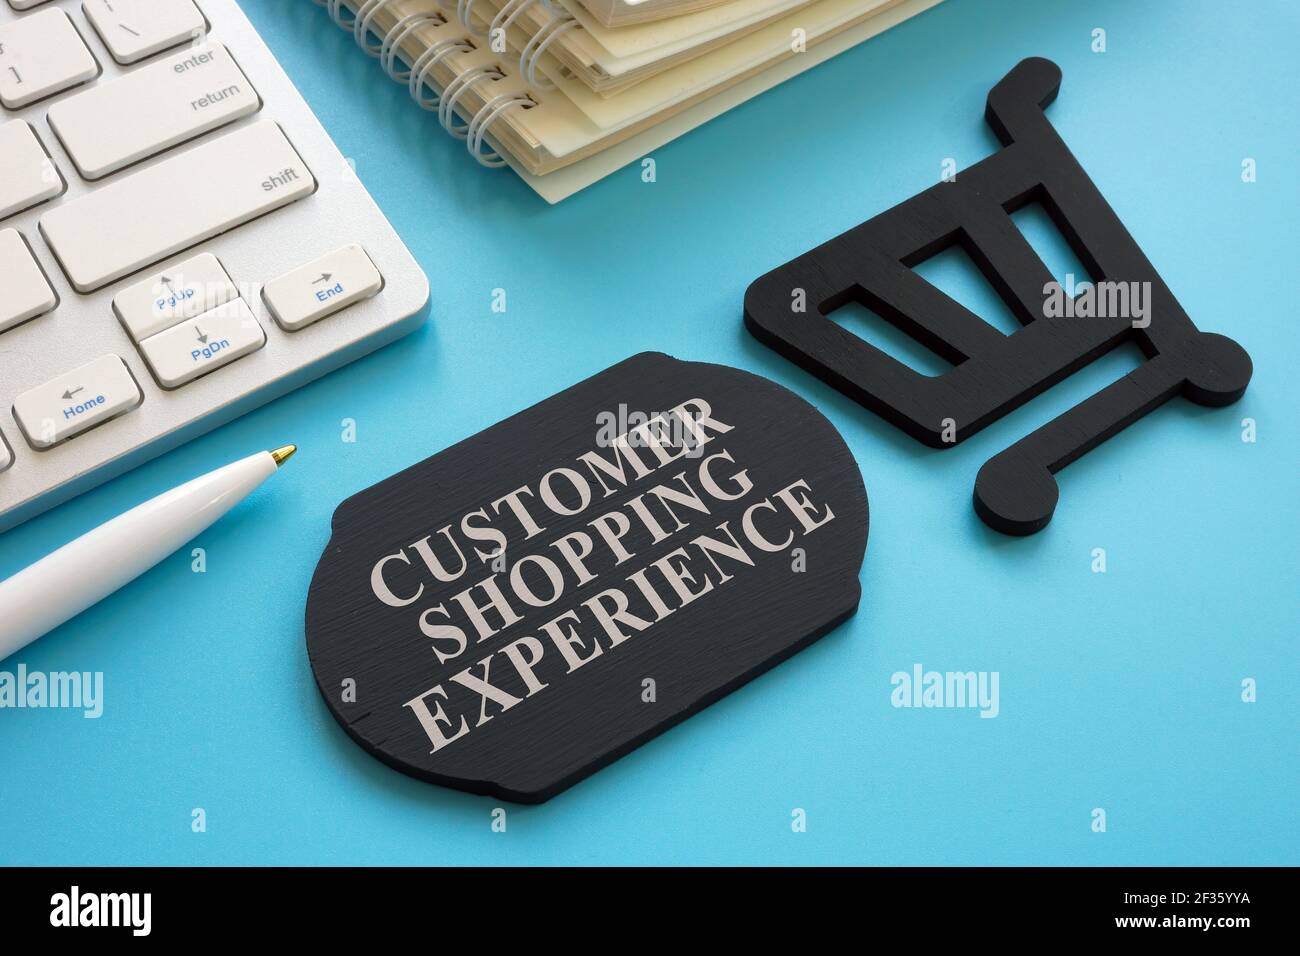 Kunden-Shopping-Erlebnis Worte auf der Platte und Tastatur. Stockfoto